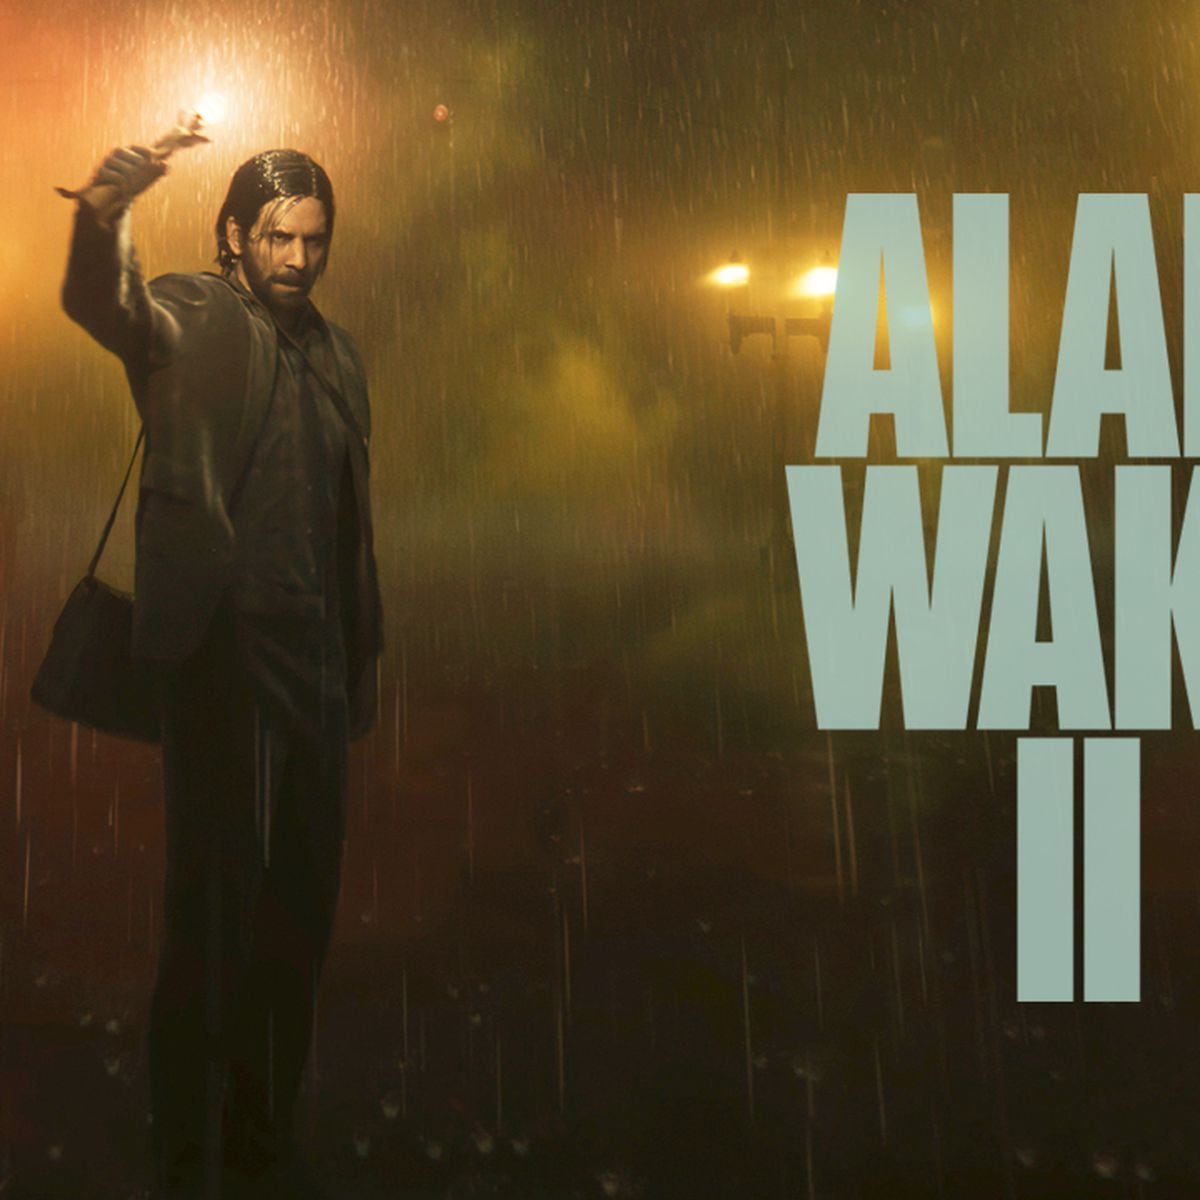 Remedy insiste: Alan Wake 2 es un juego digital y no hay planes 'por ahora'  de lanzarlo en físico - Vandal